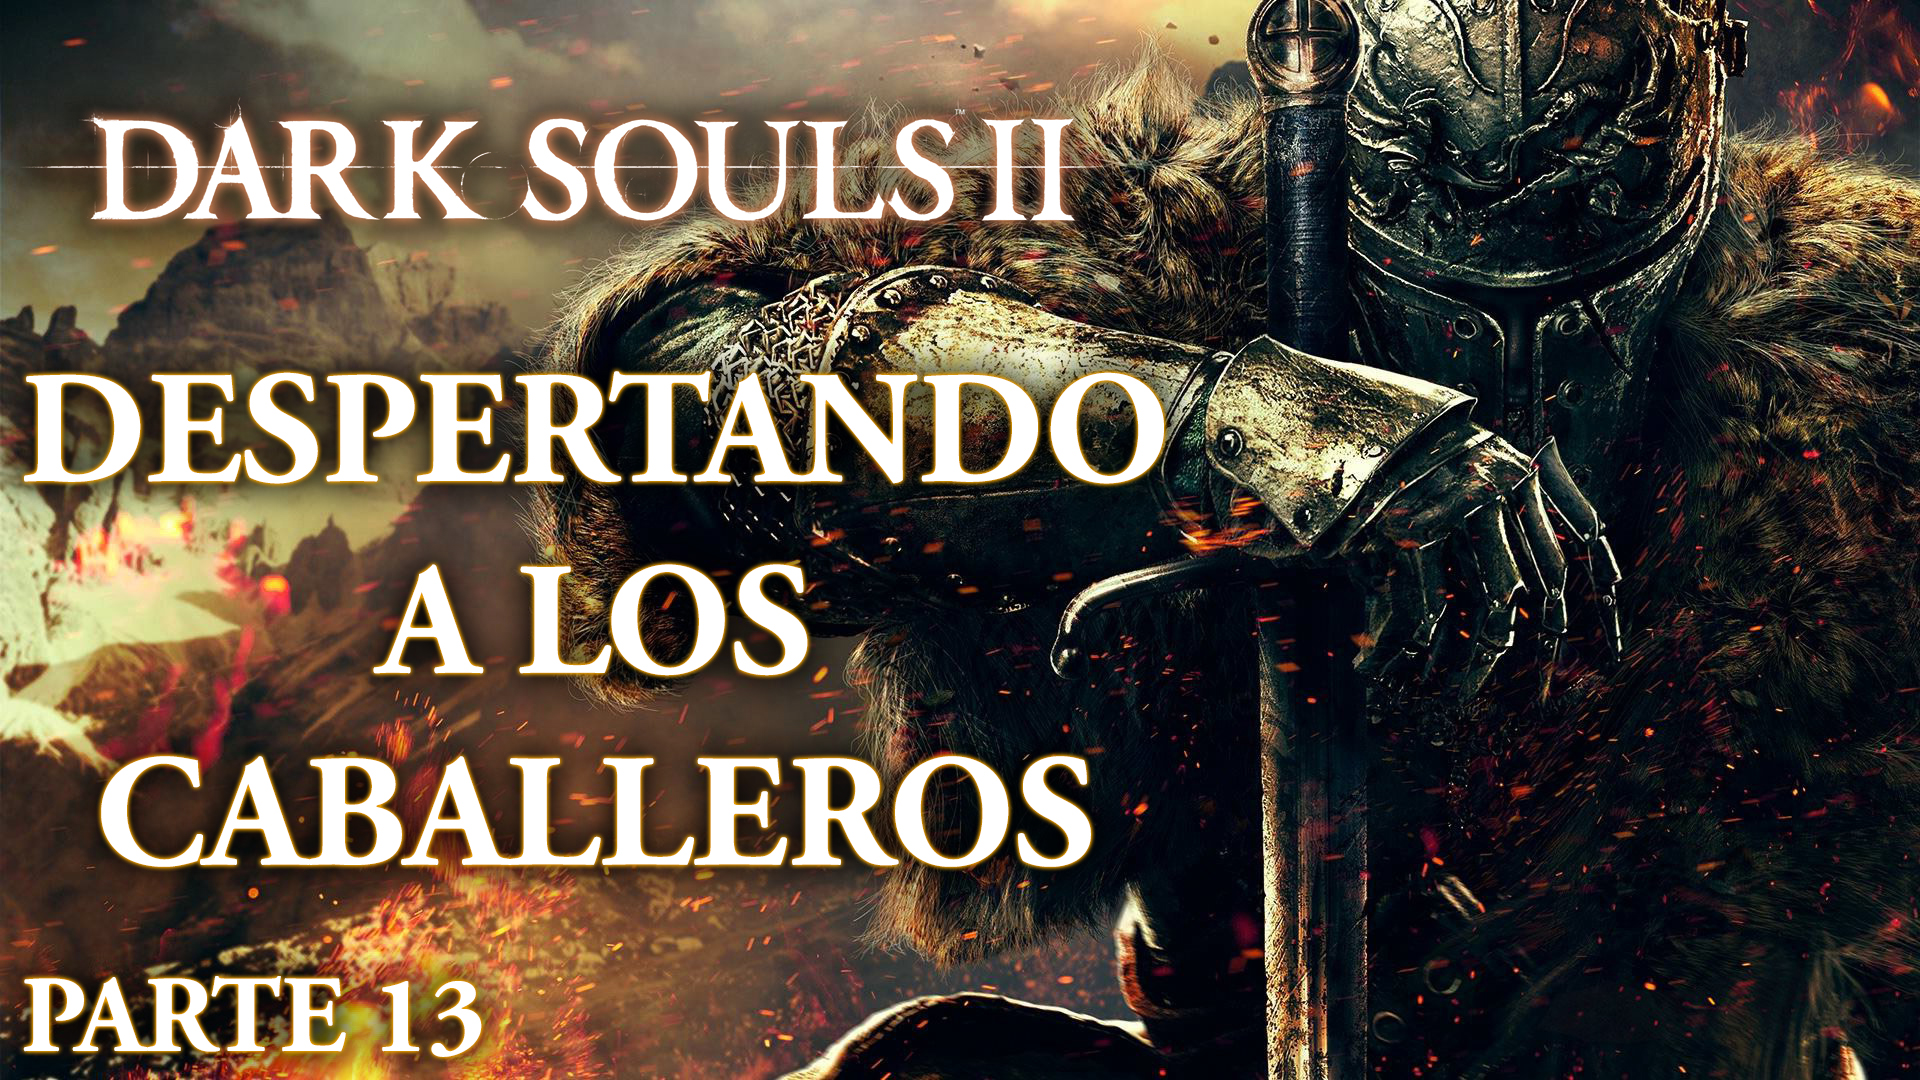 Serie Dark Souls II Parte 13: Despertando a los caballeros